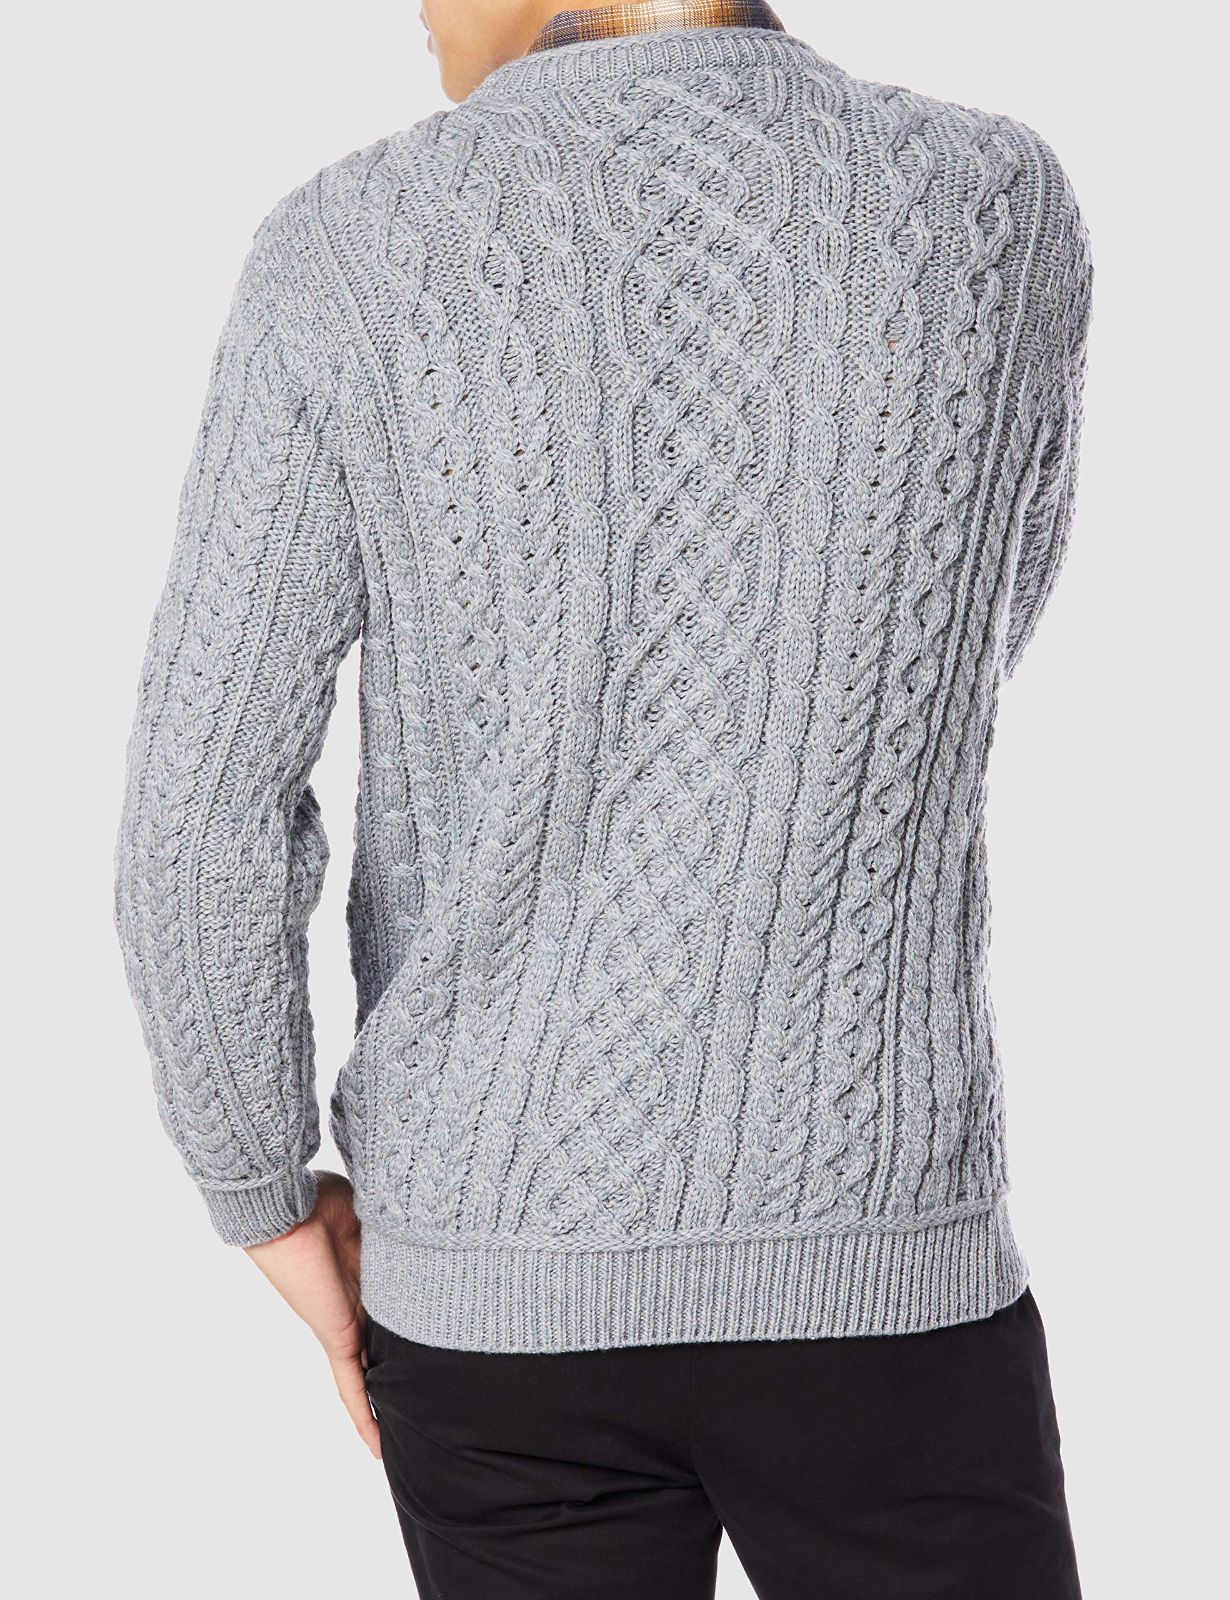 アランウーレンミルズ セーター B420 Aran sweater メンズ ASS13_cold メルカリ